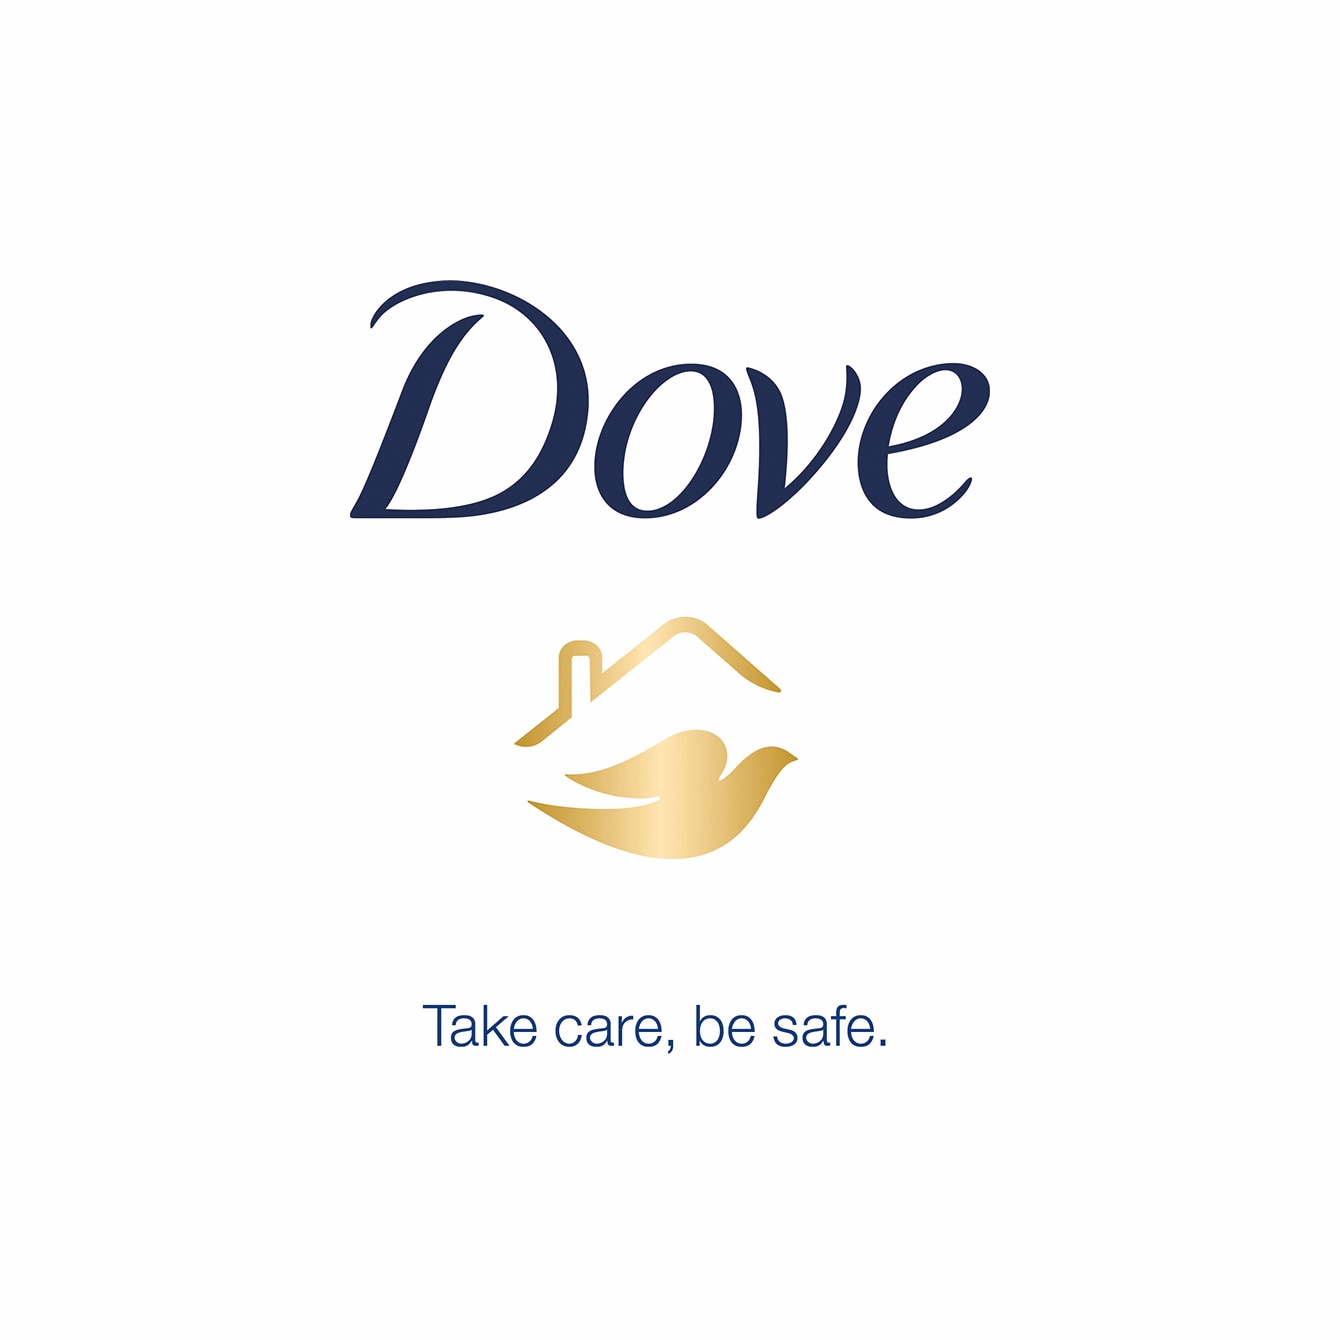 Dove Take care, be safe